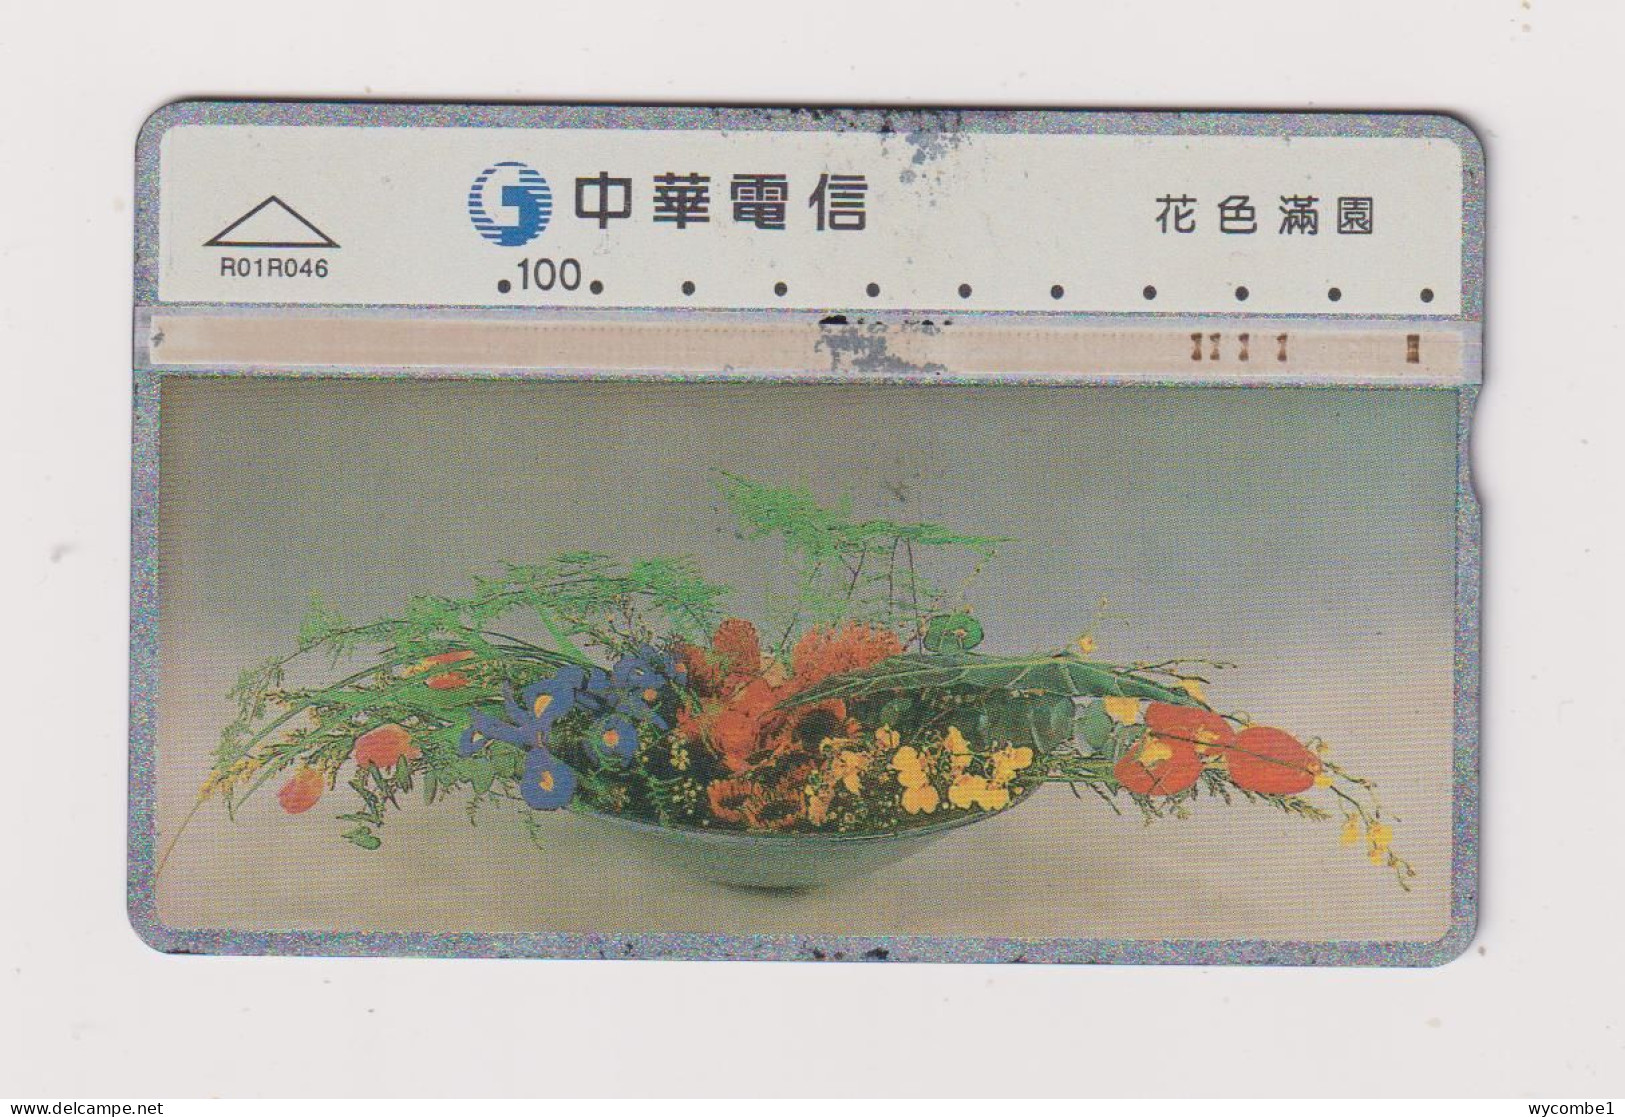 TAIWAN -  Flowers  Optical  Phonecard - Taiwán (Formosa)